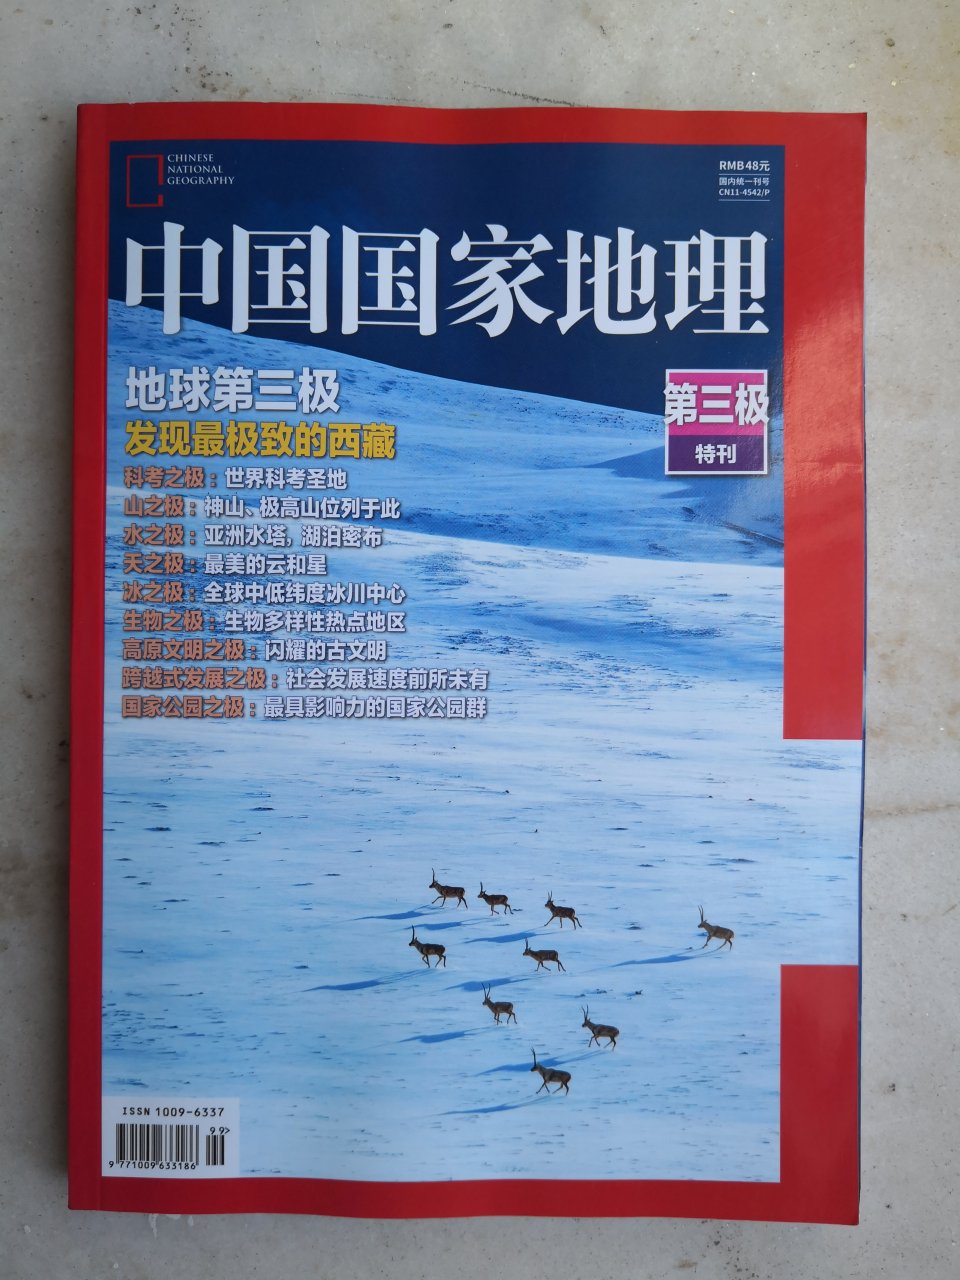 不错，非常喜欢的内容，中国国家地理18年的重头戏之一。